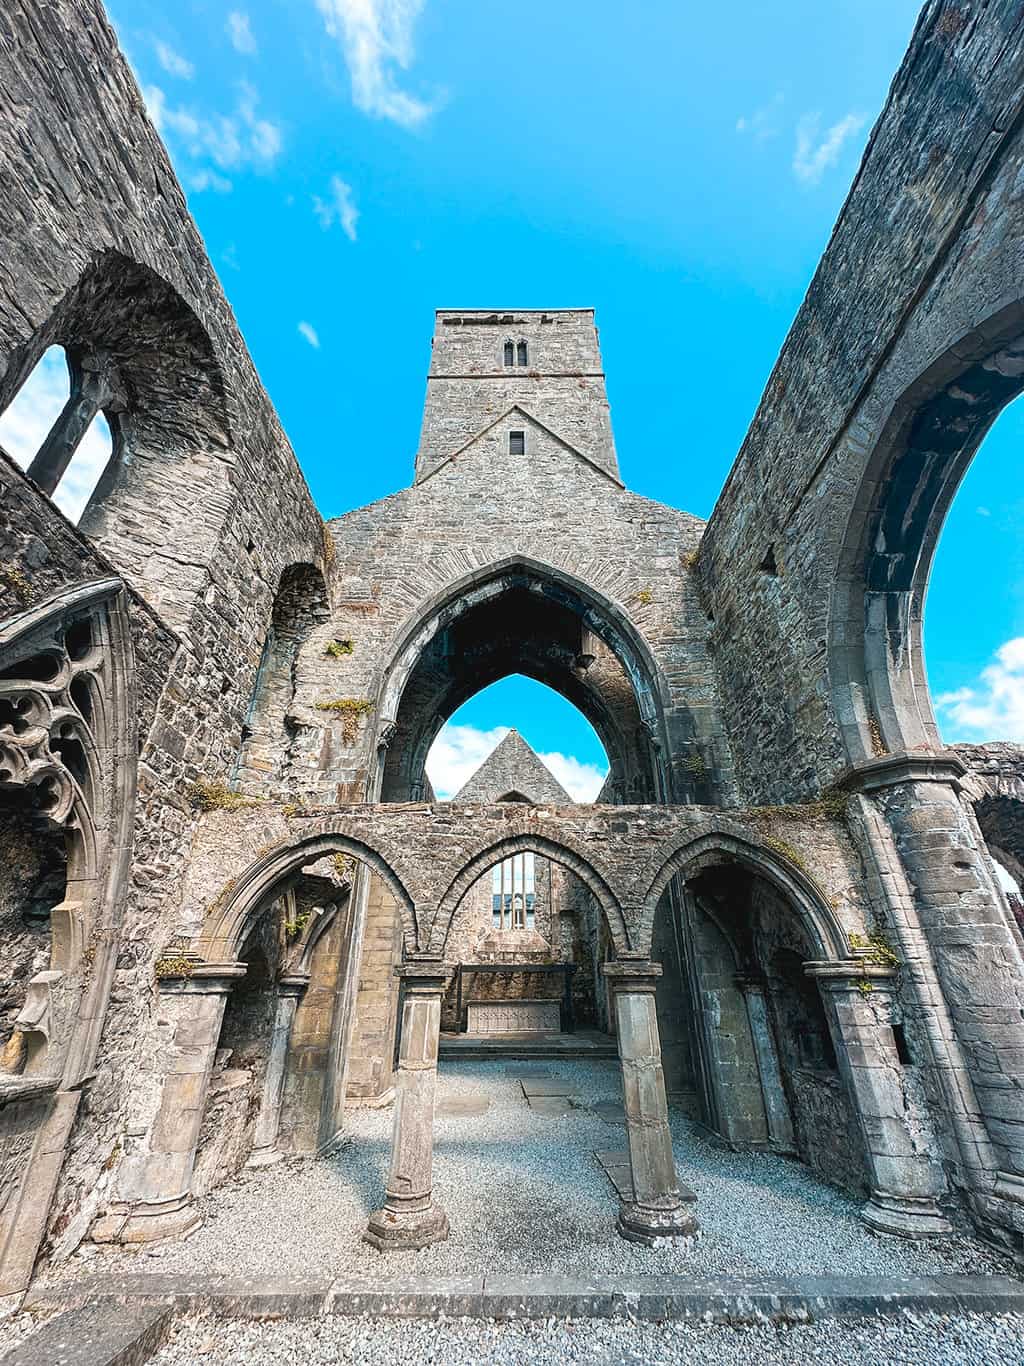 Sligo Abbey in Sligo Ireland